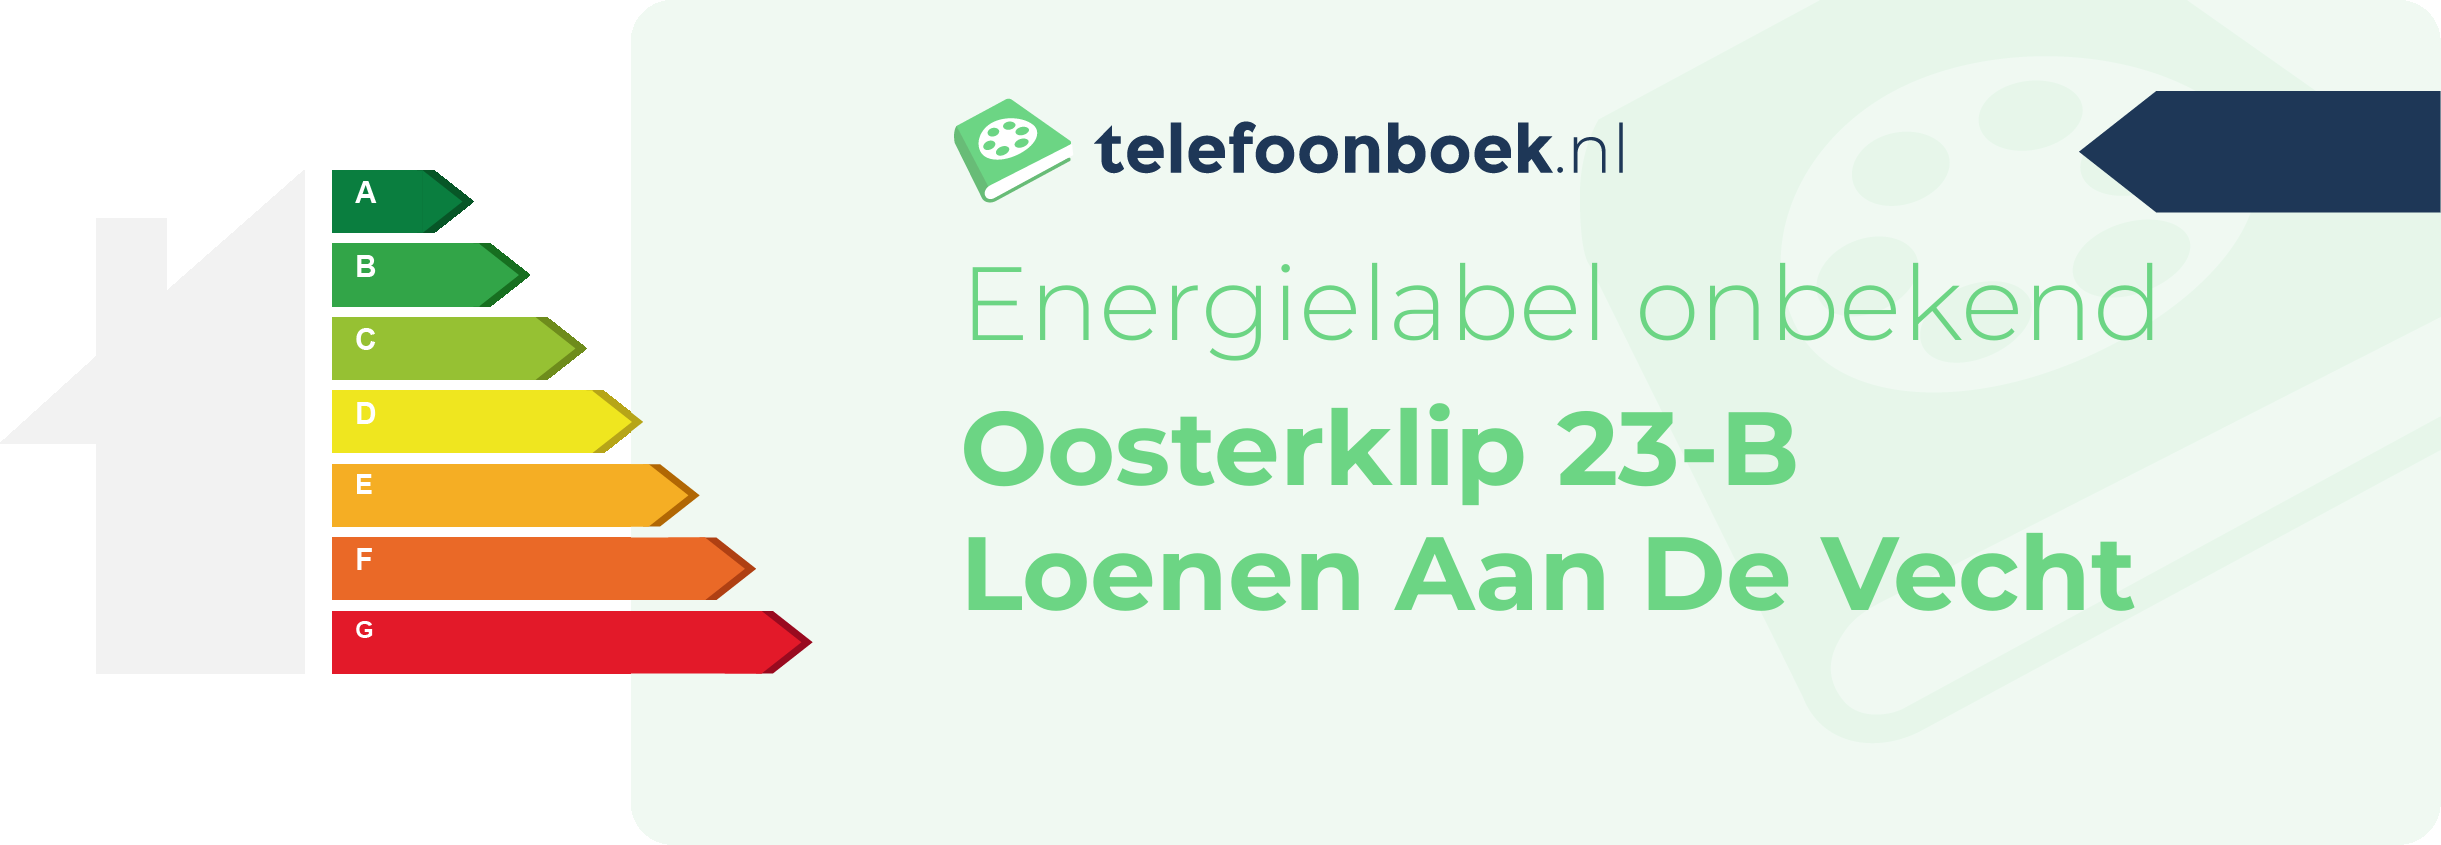 Energielabel Oosterklip 23-B Loenen Aan De Vecht